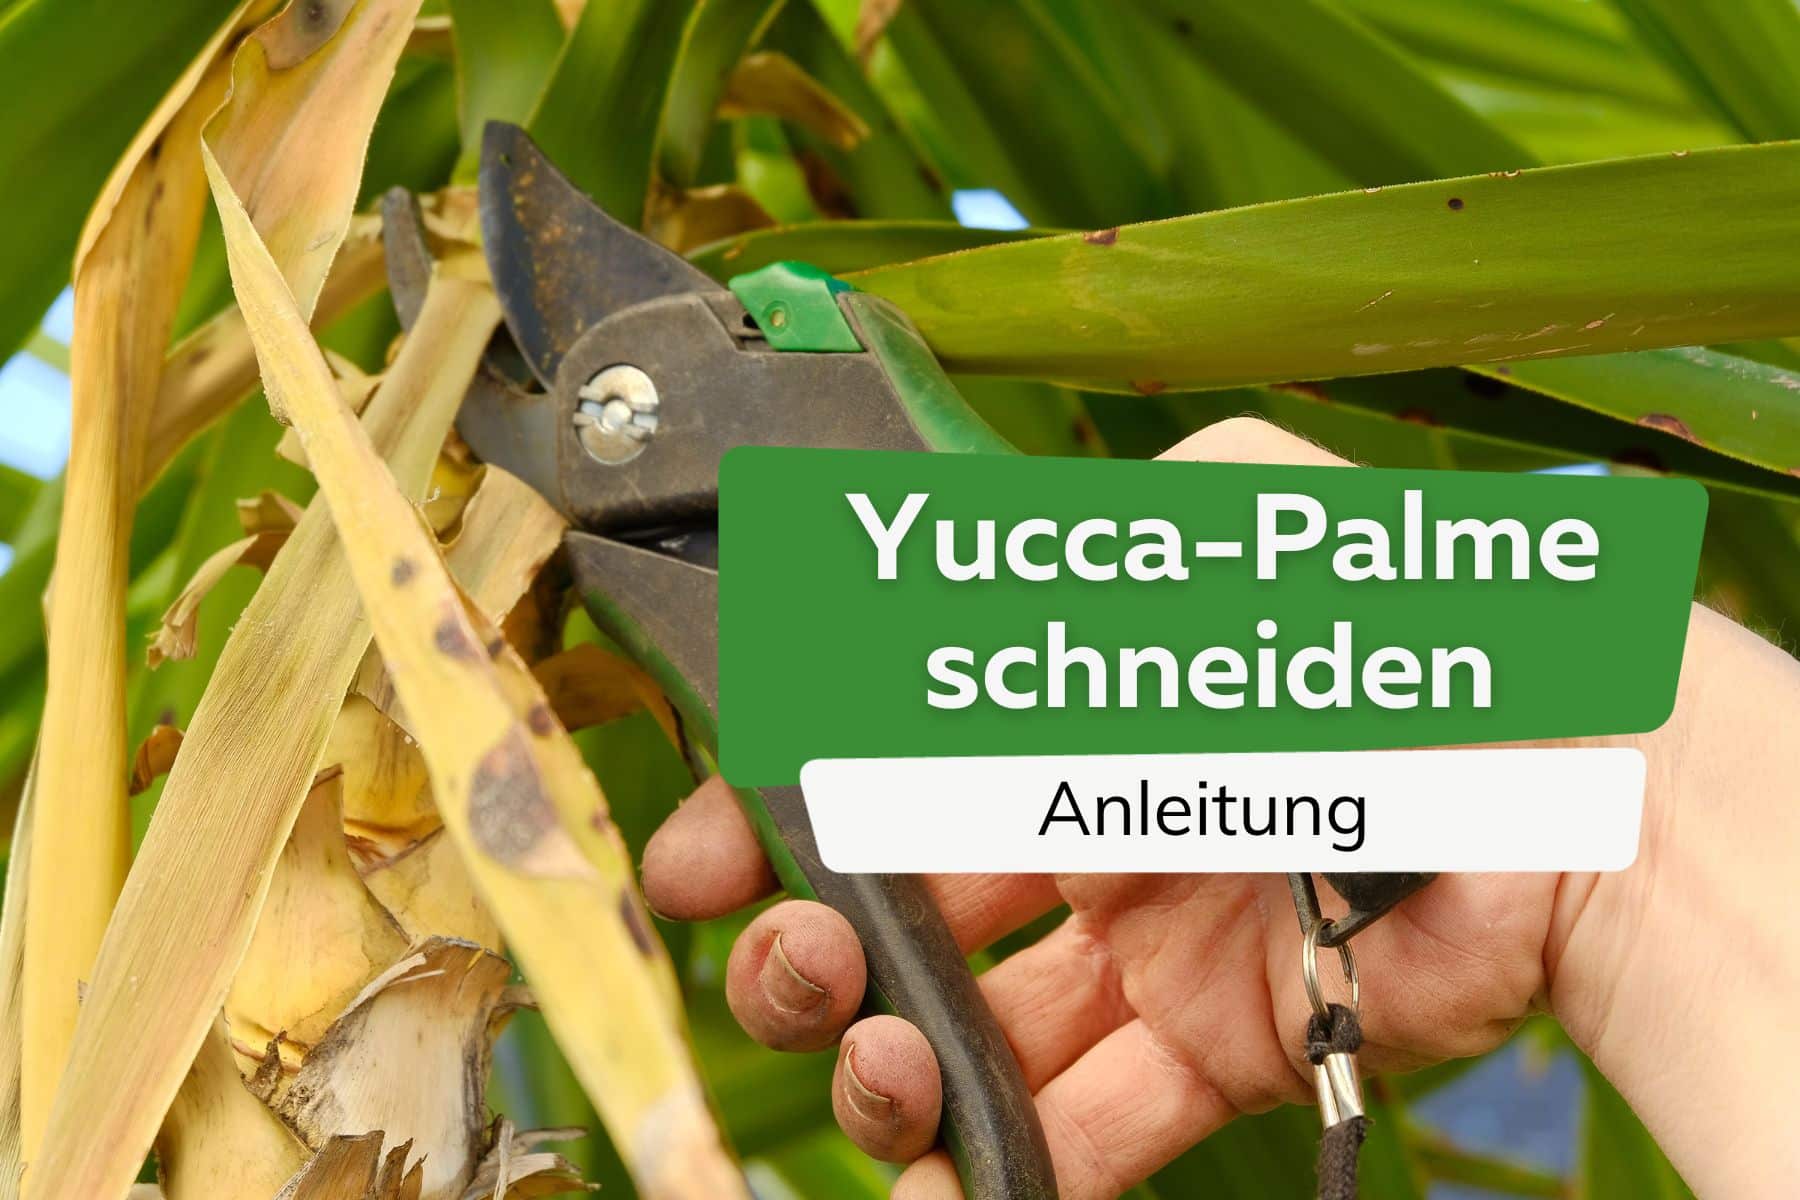 Cortar la palma de yuca: así es como se acorta correctamente el lirio de palma